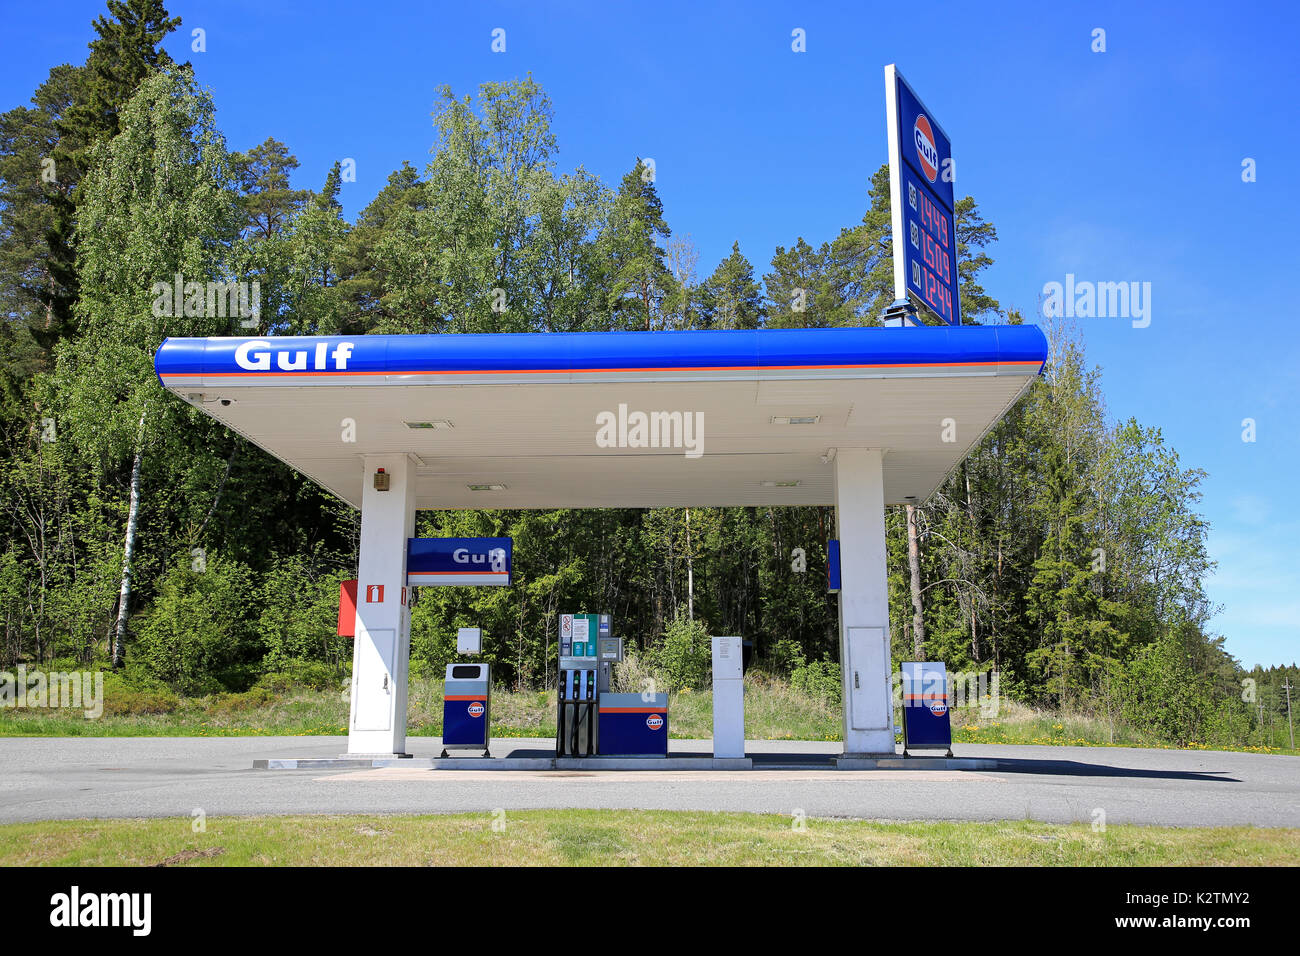 MASKU, FINLANDE - juin 3, 2017 : station de remplissage d'essence sans pilote du Golfe à Masku sur une belle journée ensoleillée. Depuis 2008, les stations du Golfe sont de retour Banque D'Images